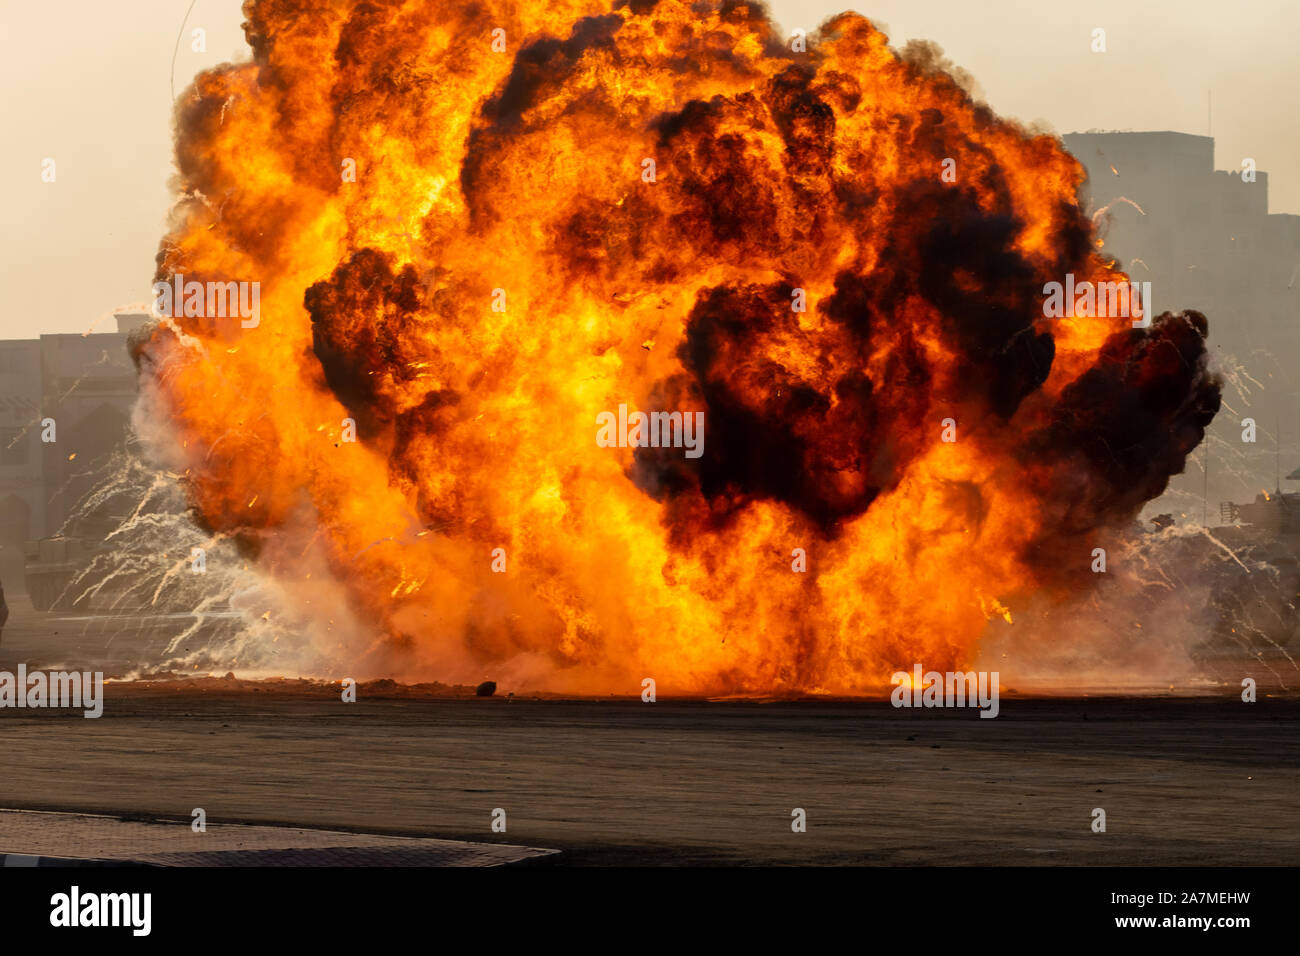 Violent incendie explosion dans les affrontements militaires et de la guerre. Explosure véhicule à partir d'un tank dans une ville du Moyen-Orient. Concept militaire. La force, la puissance, l'expl Banque D'Images